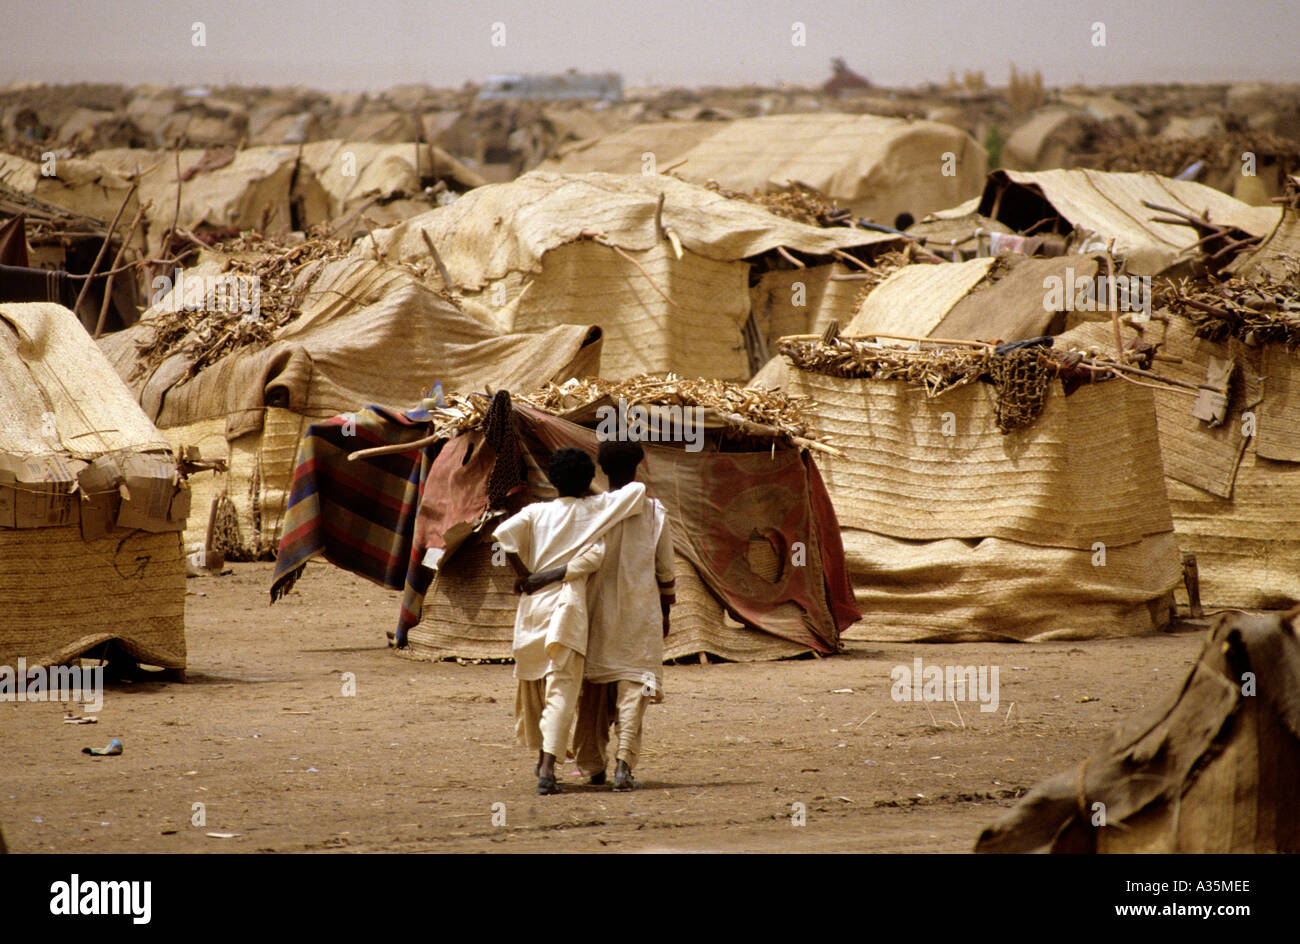 Le Soudan, de famine, de 1985. Camp de réfugiés à El Fasher, dans la région du Darfour au Soudan occidental Banque D'Images